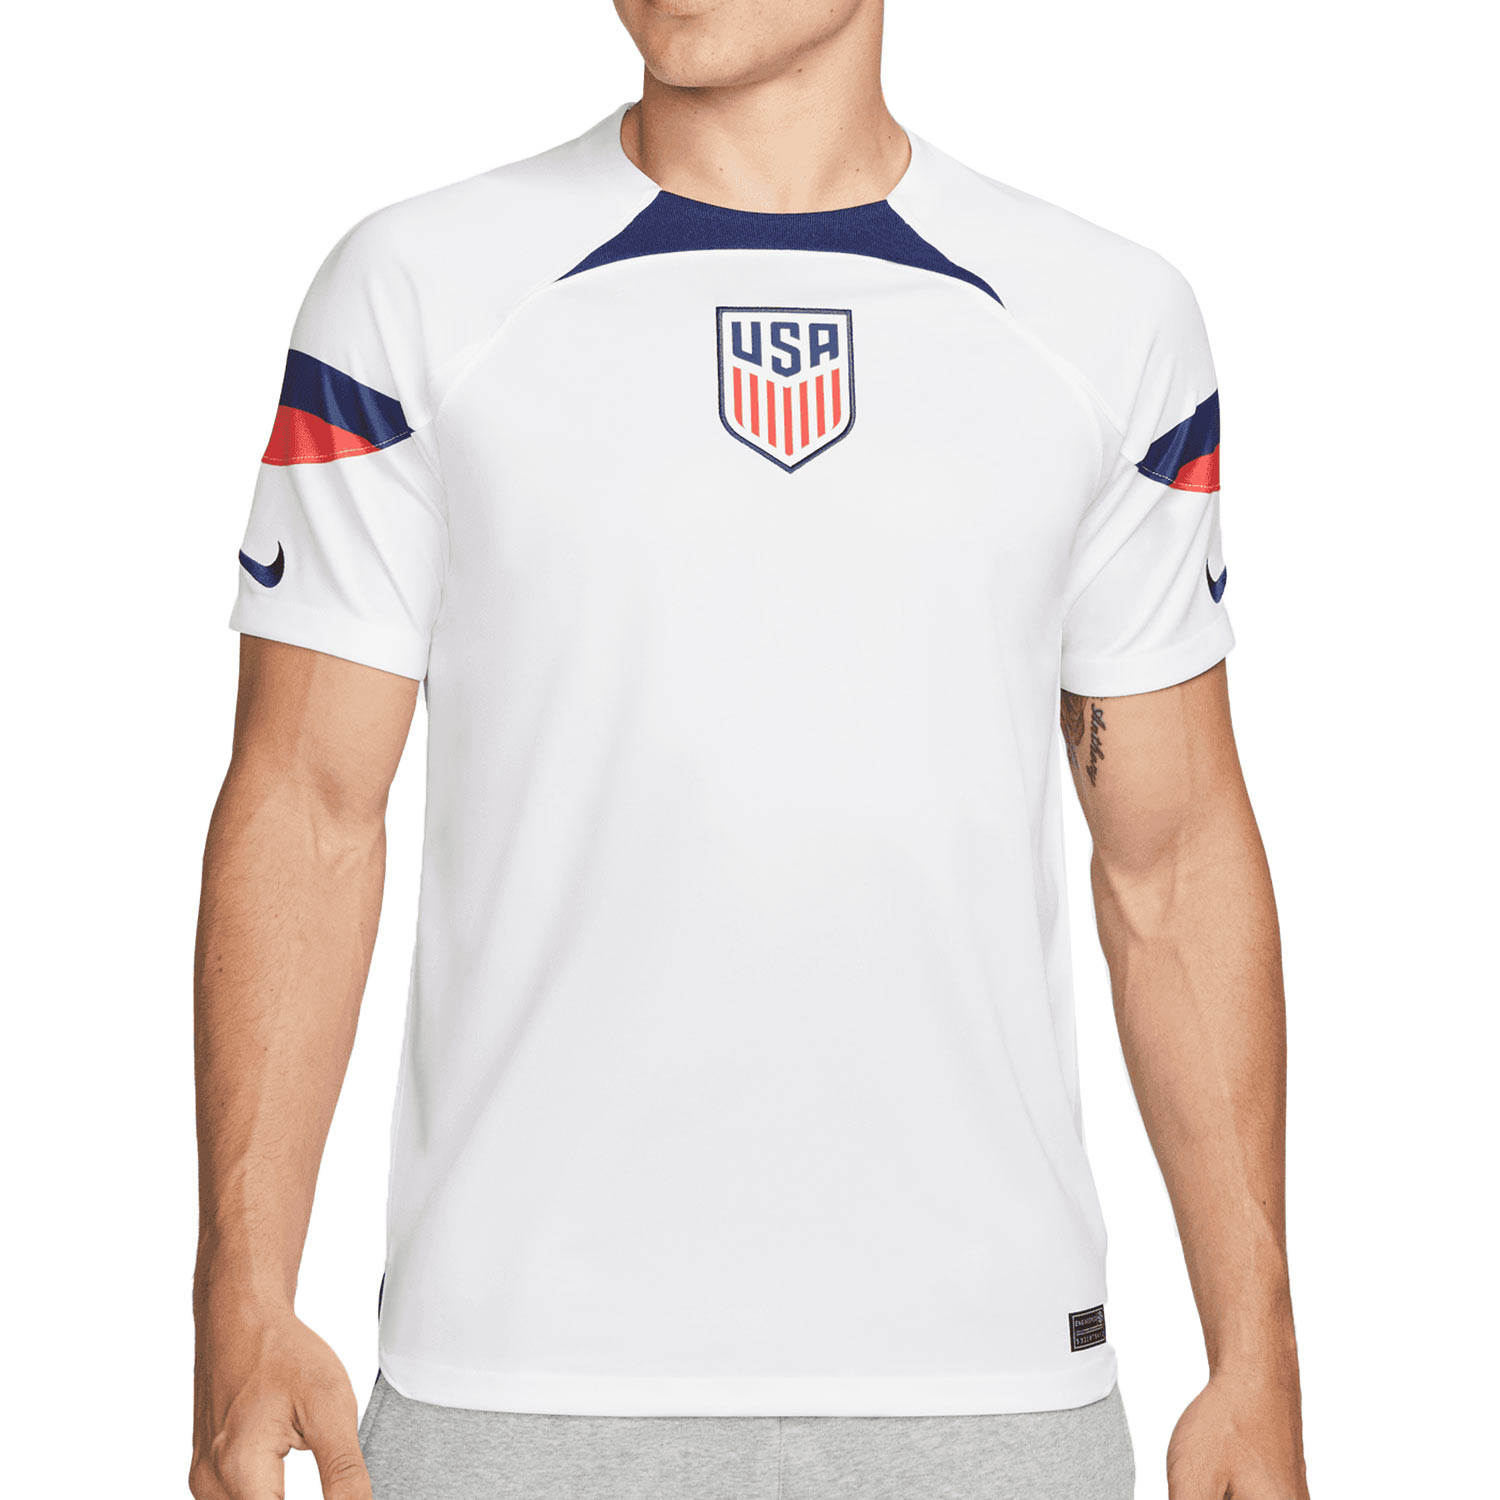 Camiseta Nike USA Dri-Fit blanca | futbolmania